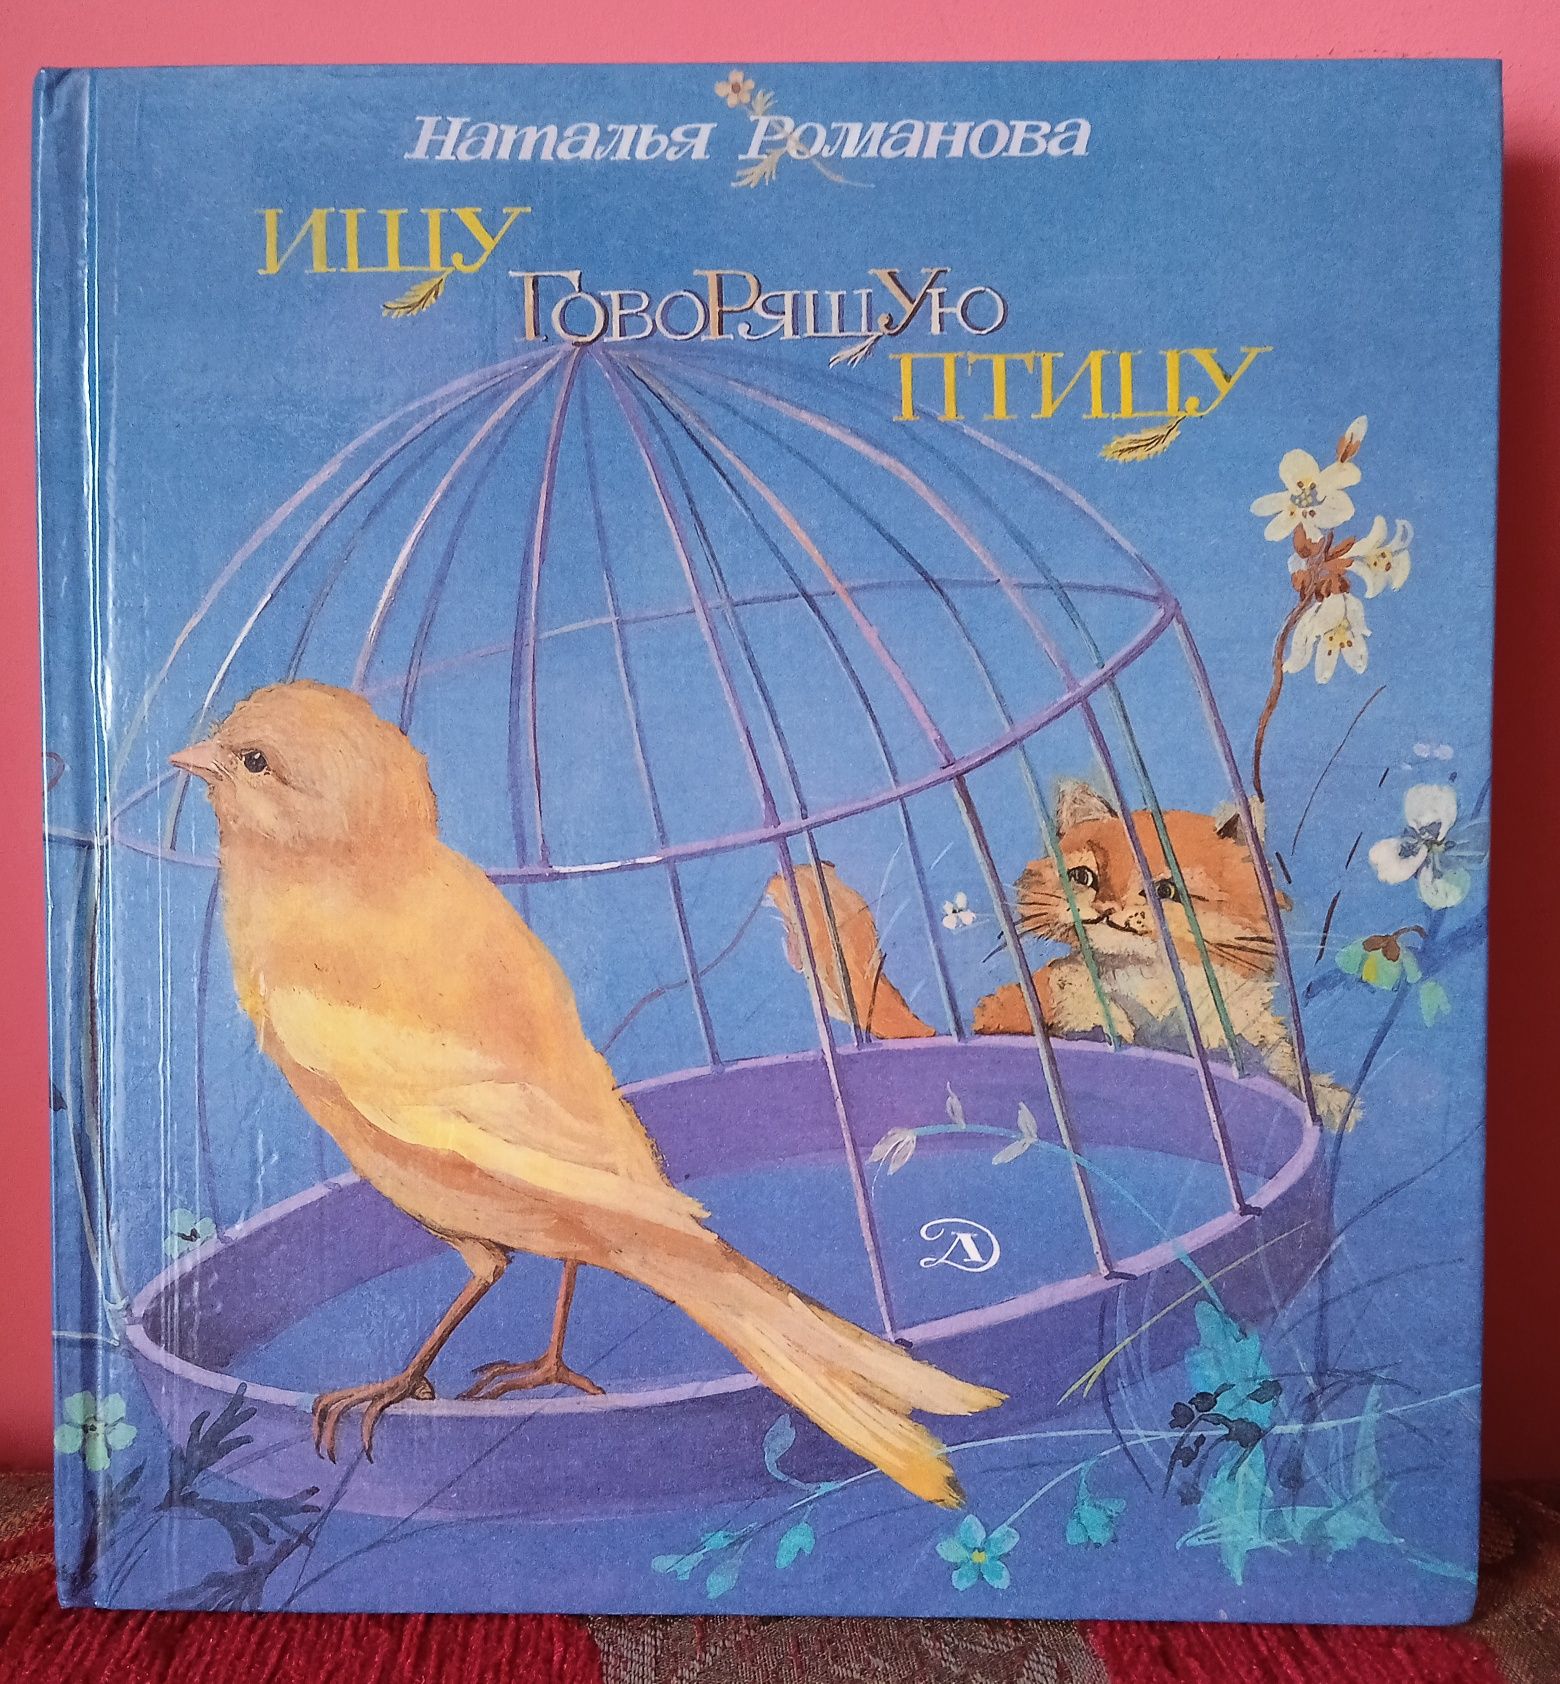 Н.Романова "Ищу говорящую птицу"